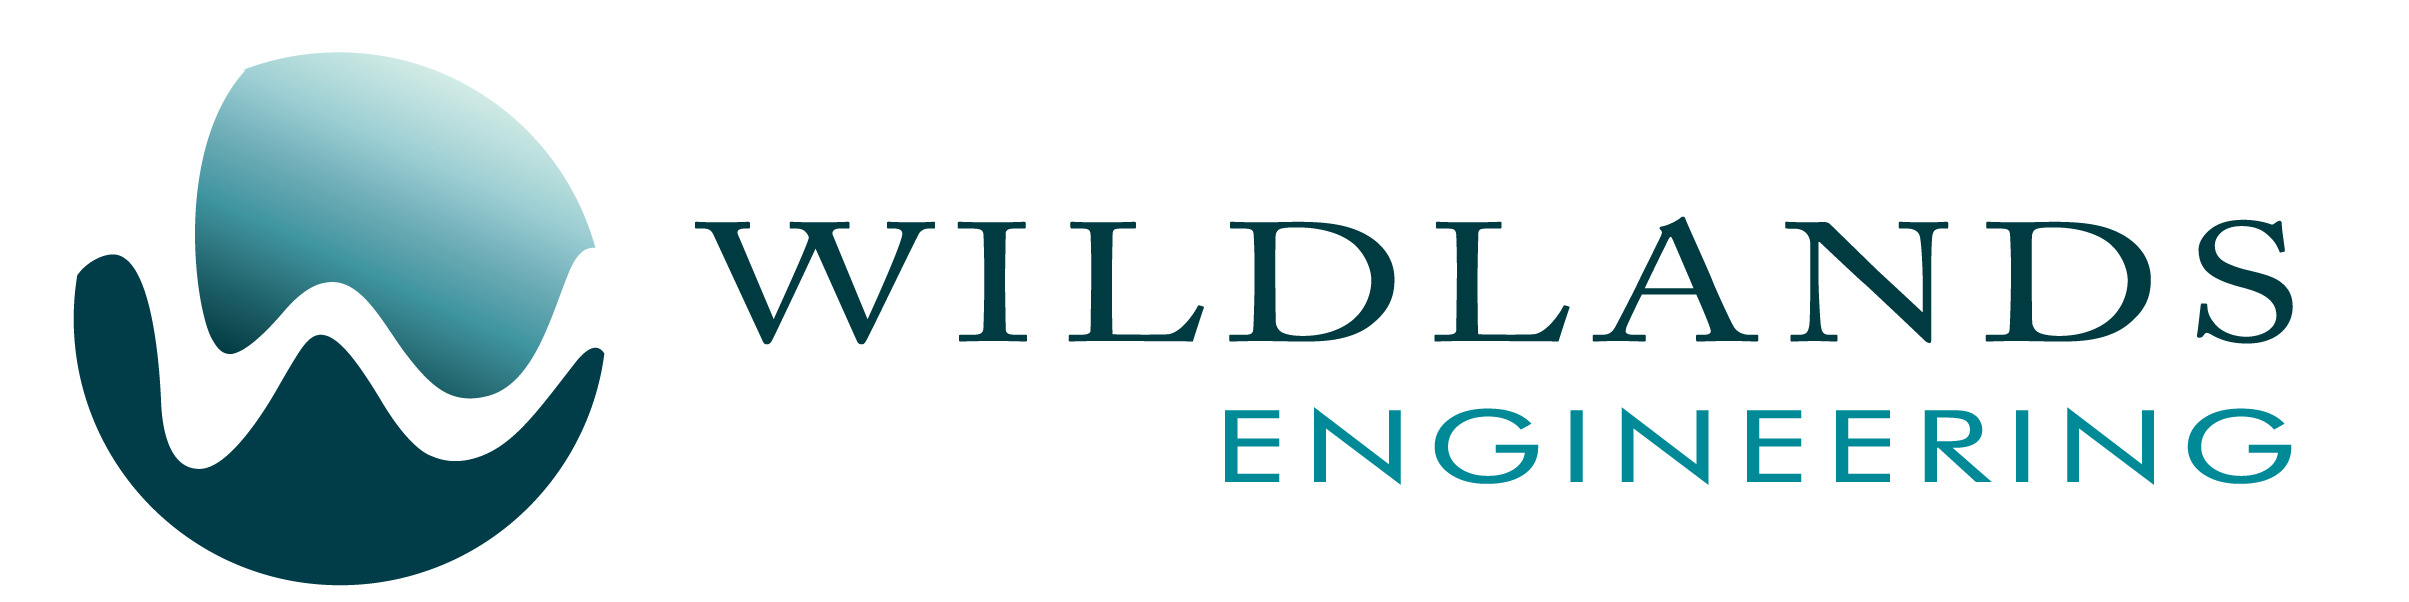 Wildlands Engineering Seeks Water Resources Engineer